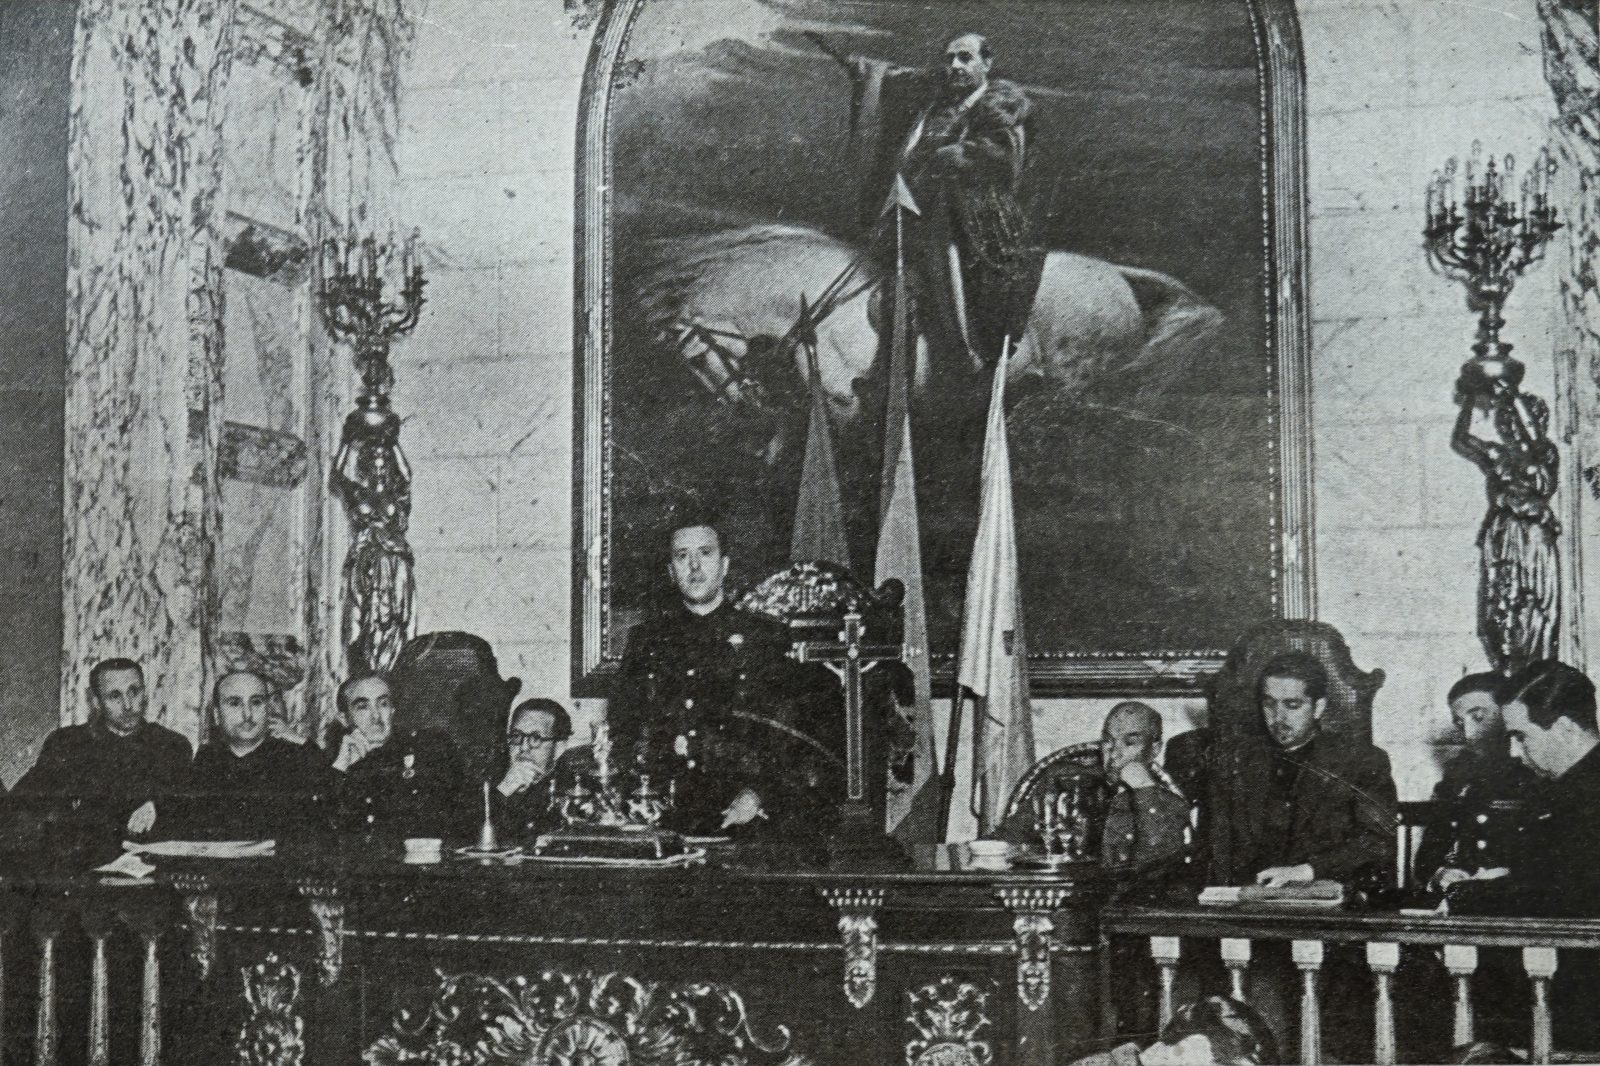 Retrat de Franco, amb el braç en alt, a la sala de plens de l'Ajuntament de València (José Segrelles, 1944). (Boleti?n Sindical de Valencia)